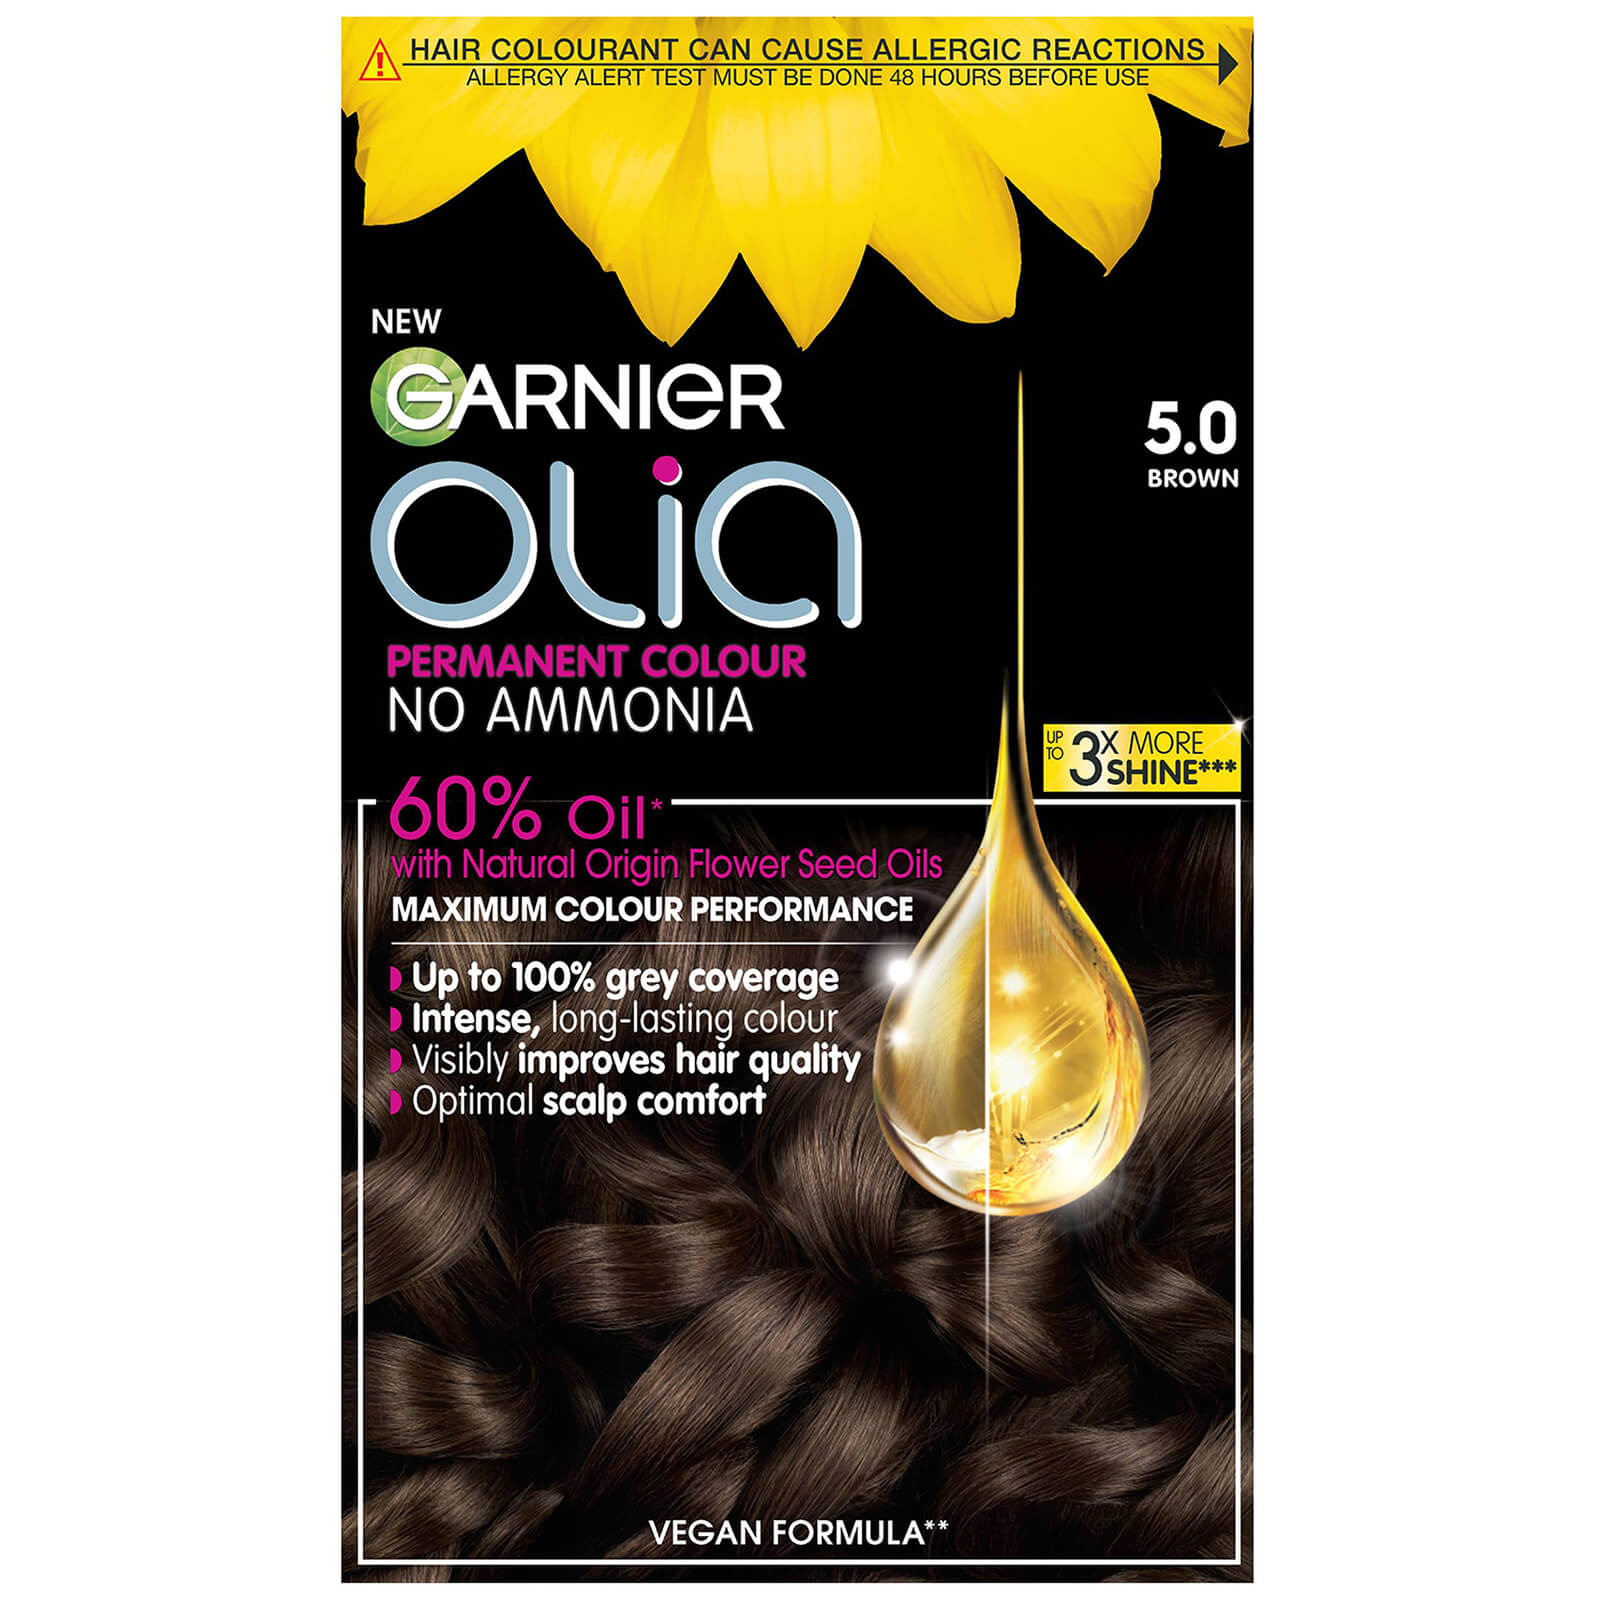 Garnier Olia Permanent Hair Dye (Various Shades) - 5.0 Brown